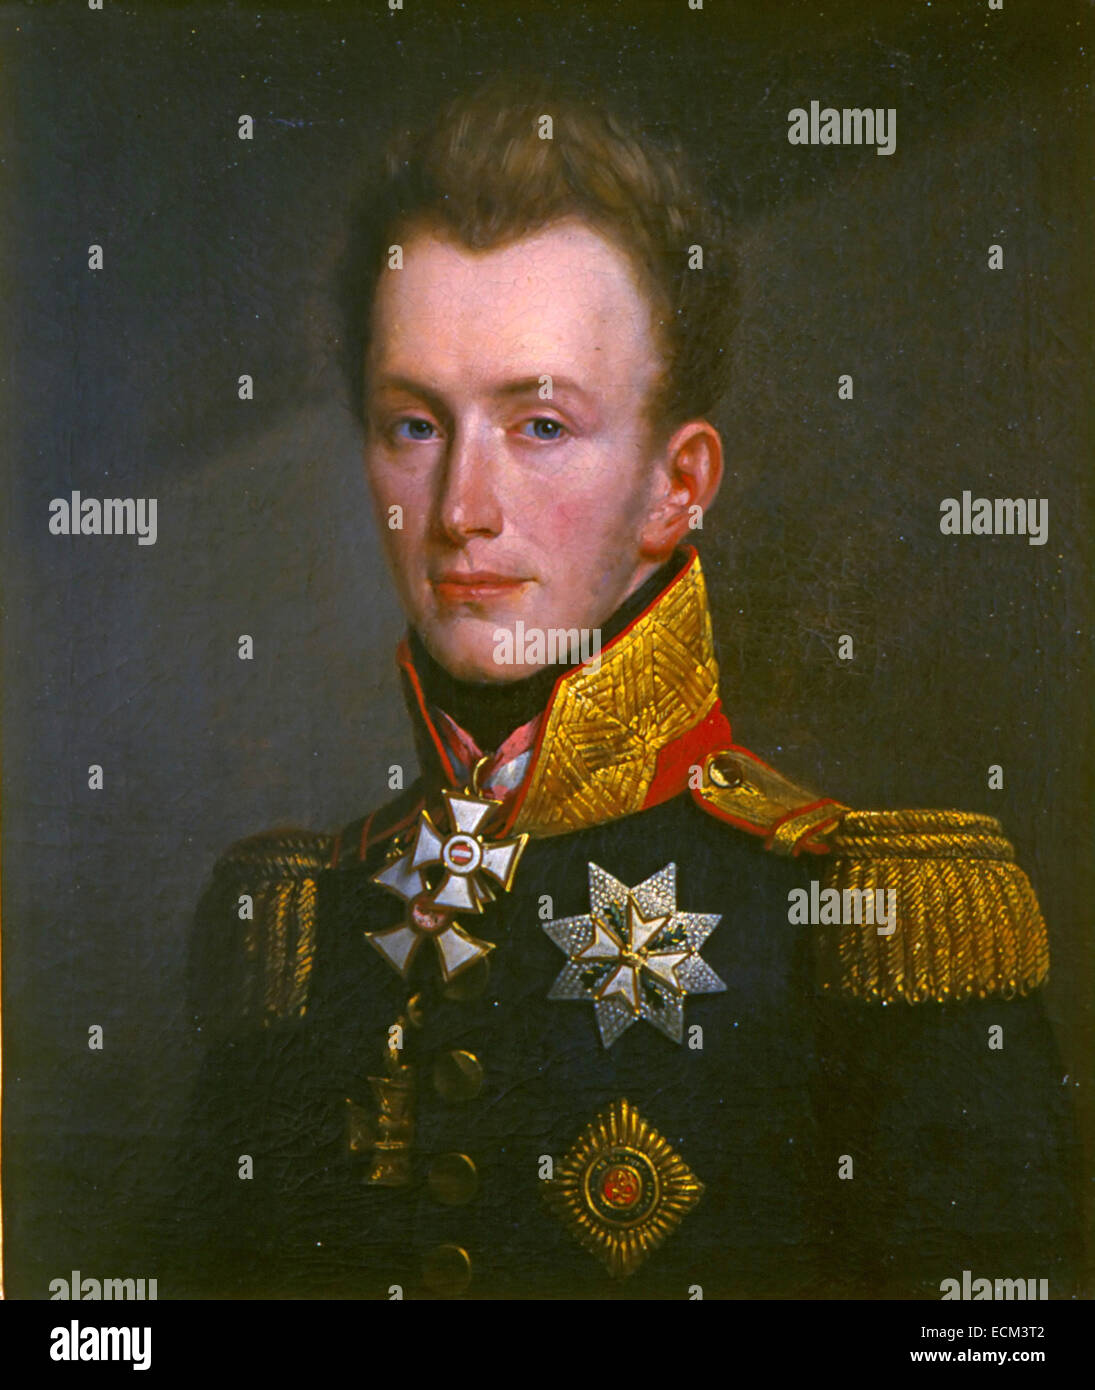 Guglielmo II dei Paesi Bassi come il principe di Orange presso il timer della battaglia di Waterloo in 1815 Foto Stock